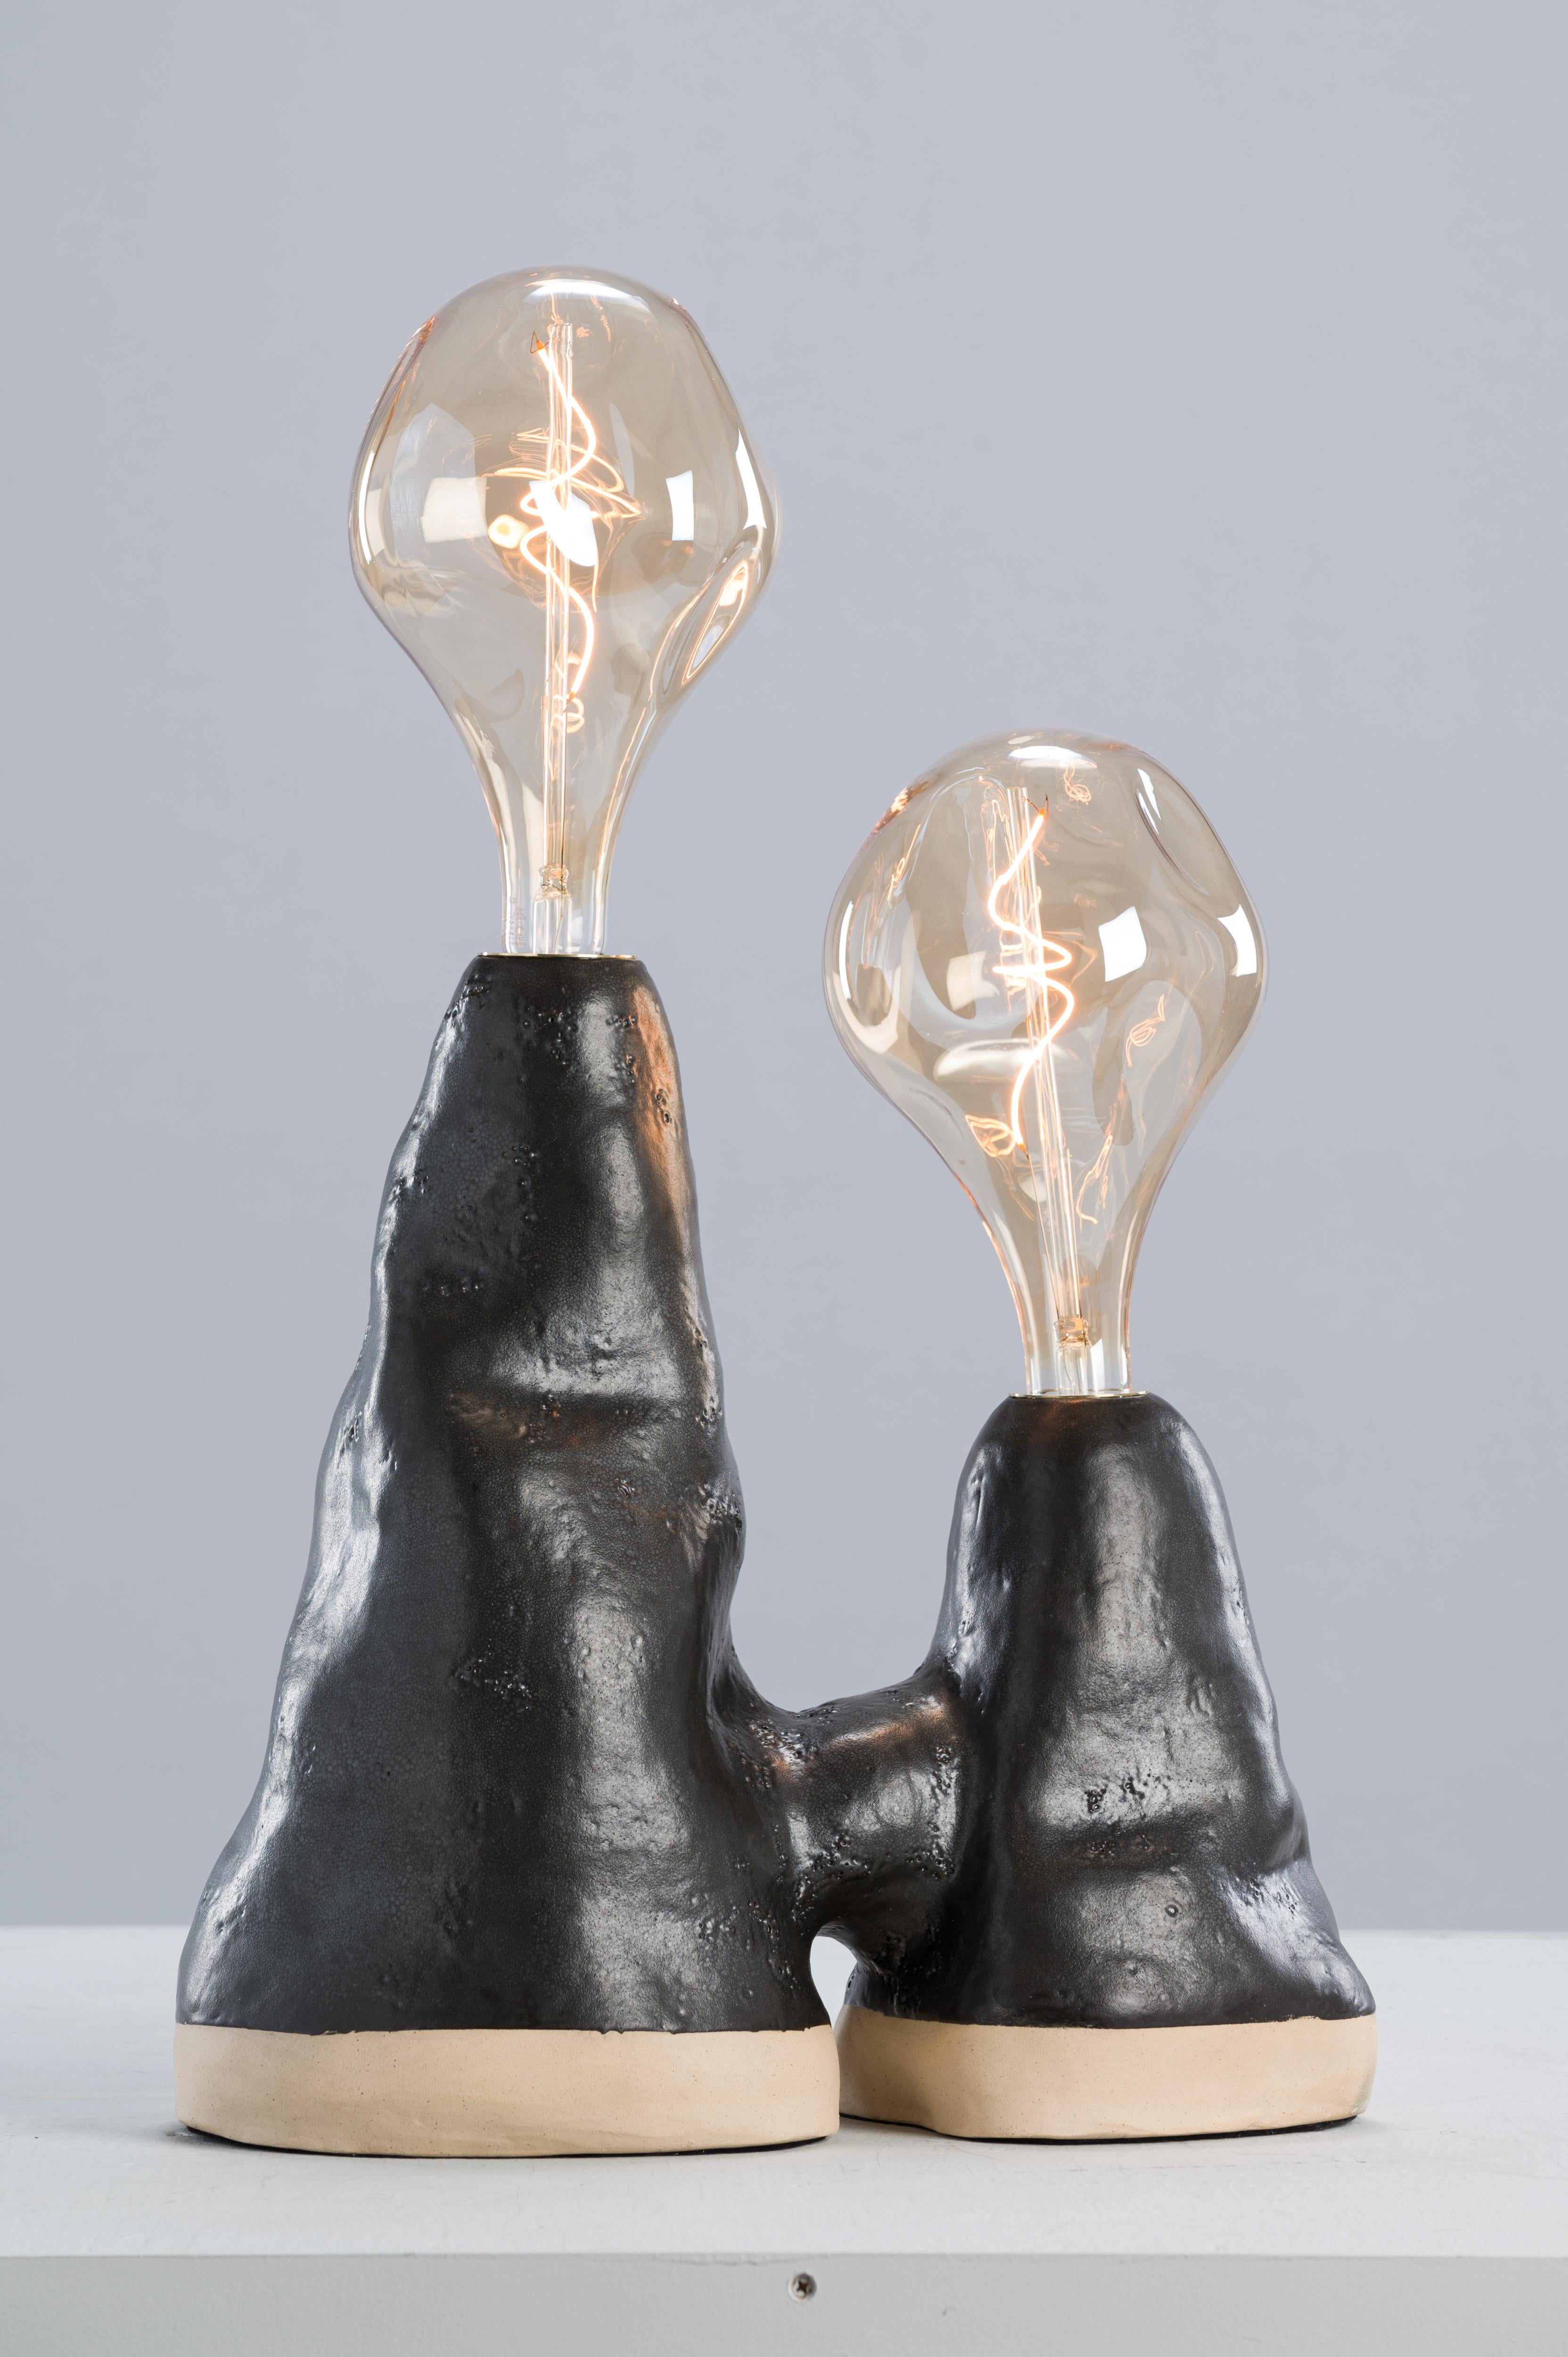 Grande lampe double par Sophie Rogers
Dimensions : D 51 x H 50 (base seule) / 74 (avec ampoule) cm
Matériaux : grès blanc, émail noir mat, laiton vieilli
Spécifications de l'ampoule : 6W, E27, 340 Lumens, dimmable
Grès noir et émail blanc également